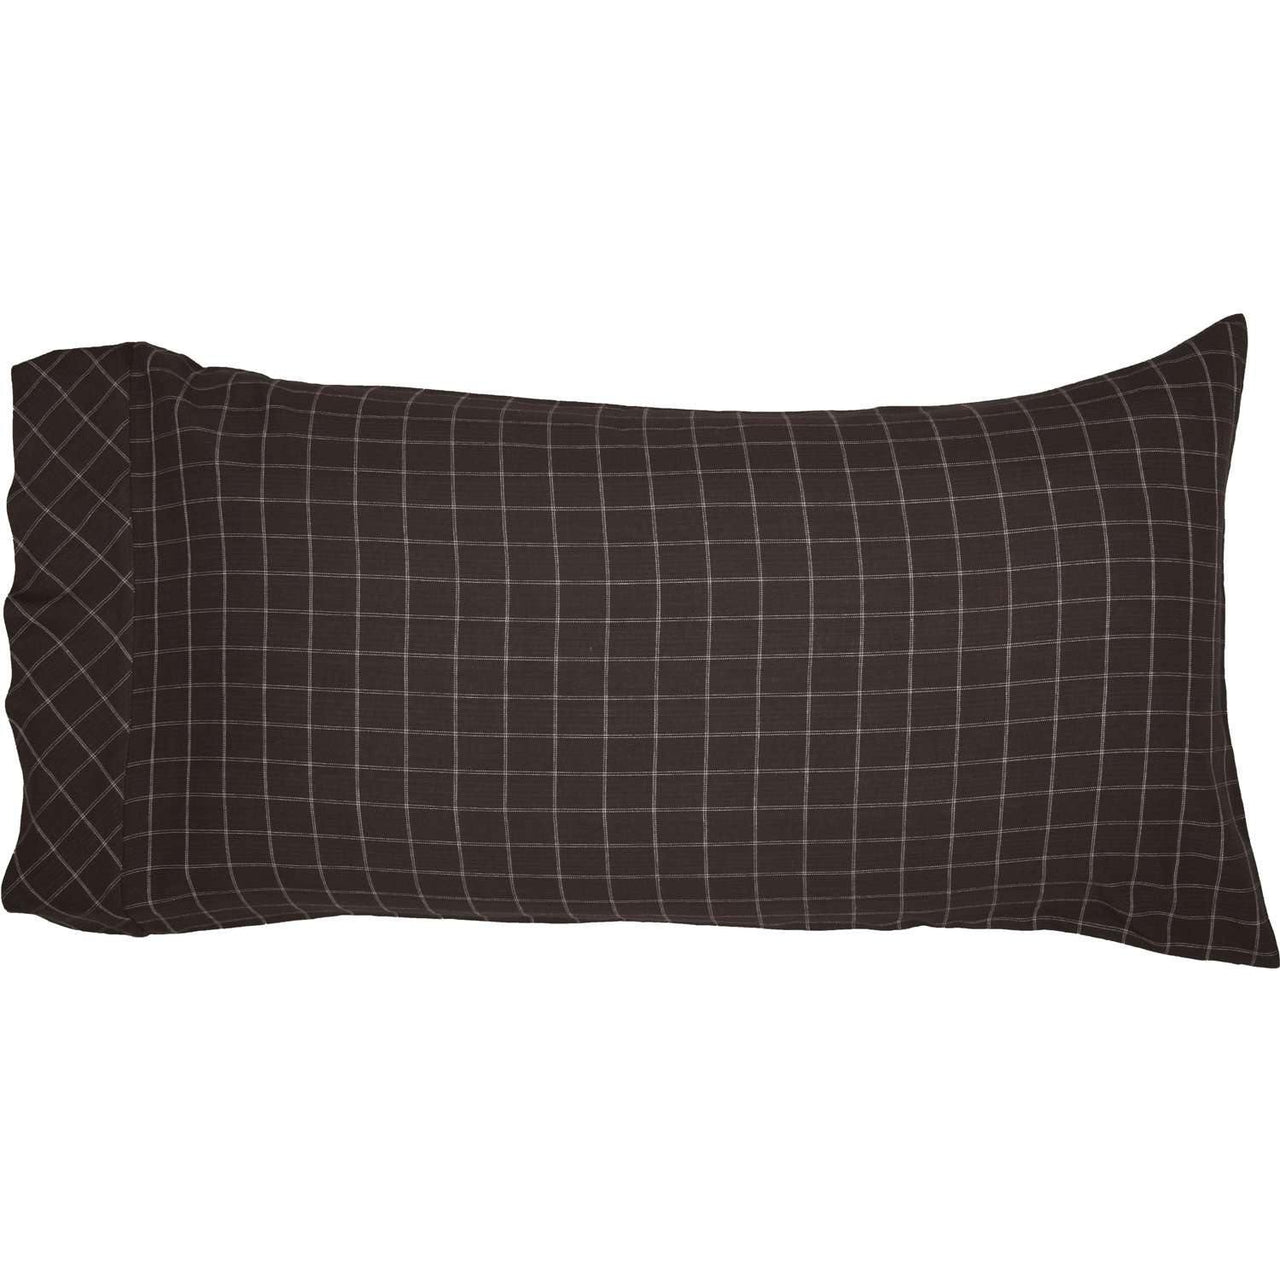 Wyatt King Pillow Case Set of 2 21x40 VHC Brands - The Fox Decor